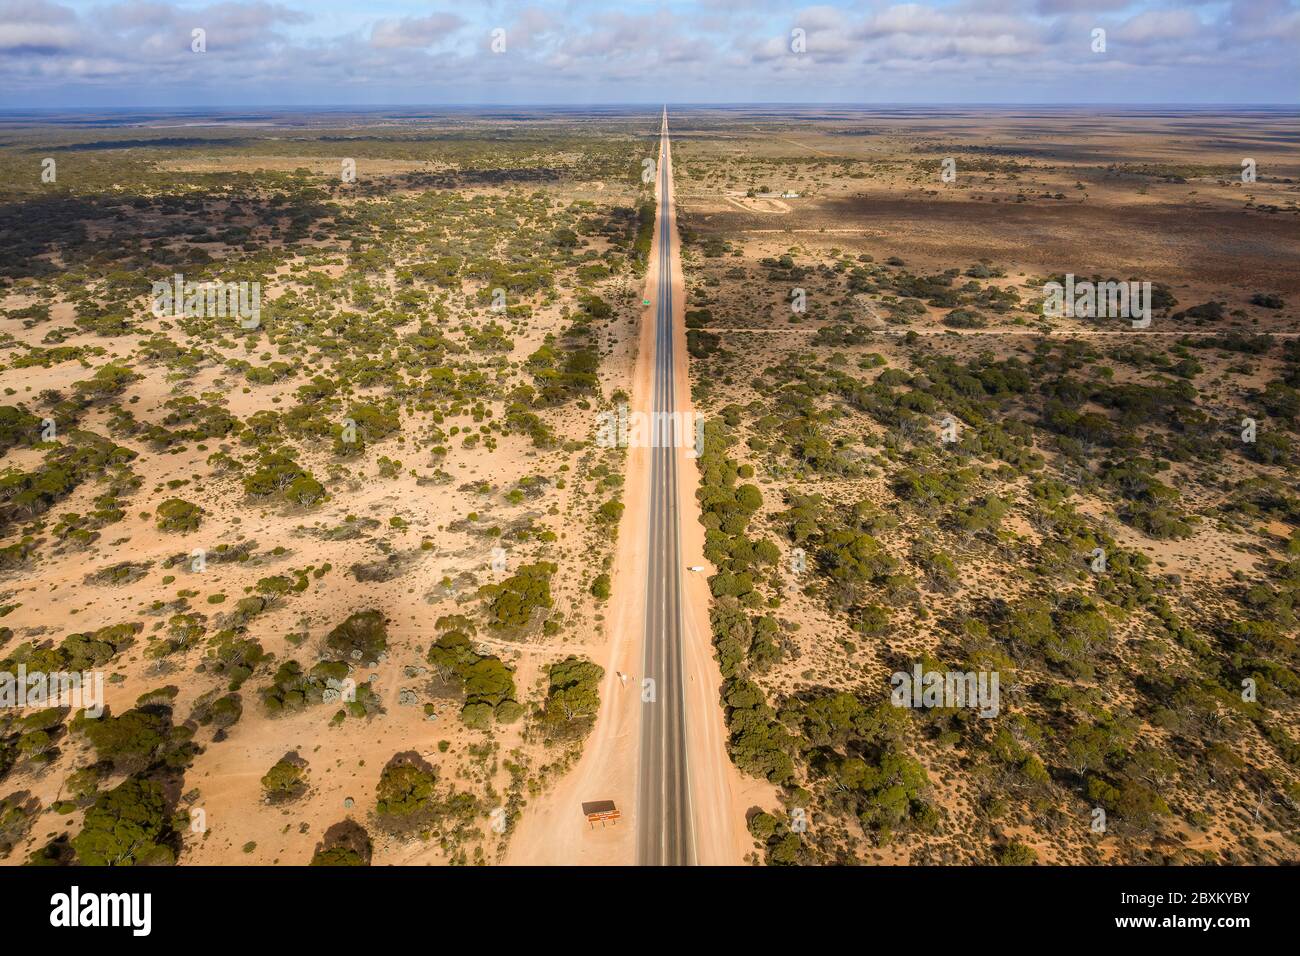 Vue aérienne du début de la route droite de 90 km, qui est la plus longue route droite d'Australie et est située sur la plaine de Nullarbor Banque D'Images